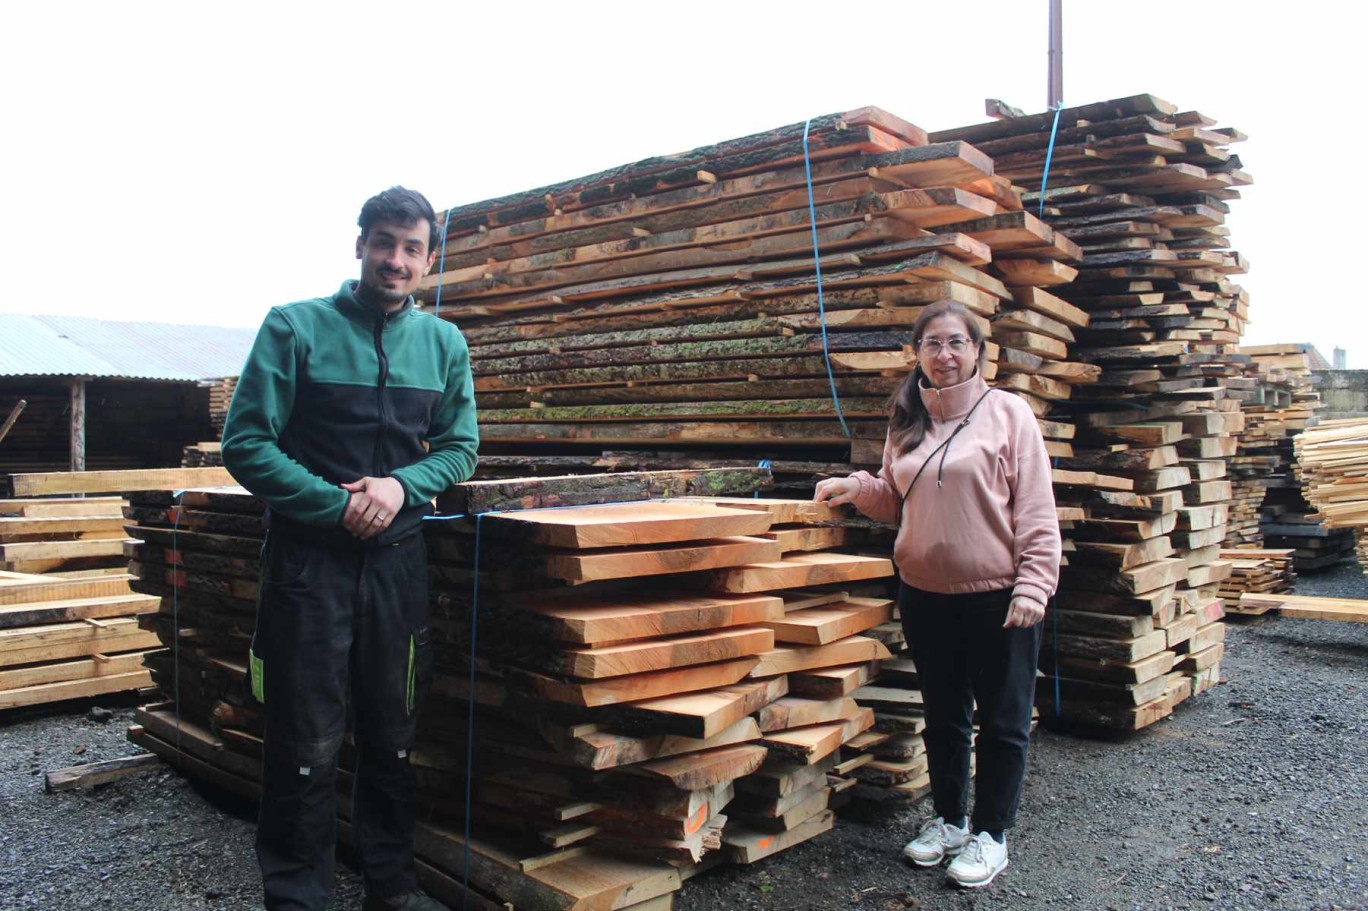 Maria Rosa Moura et son fils Ivo travaillent en famille dans la vente de bois et désormais dans l'activité de scierie.